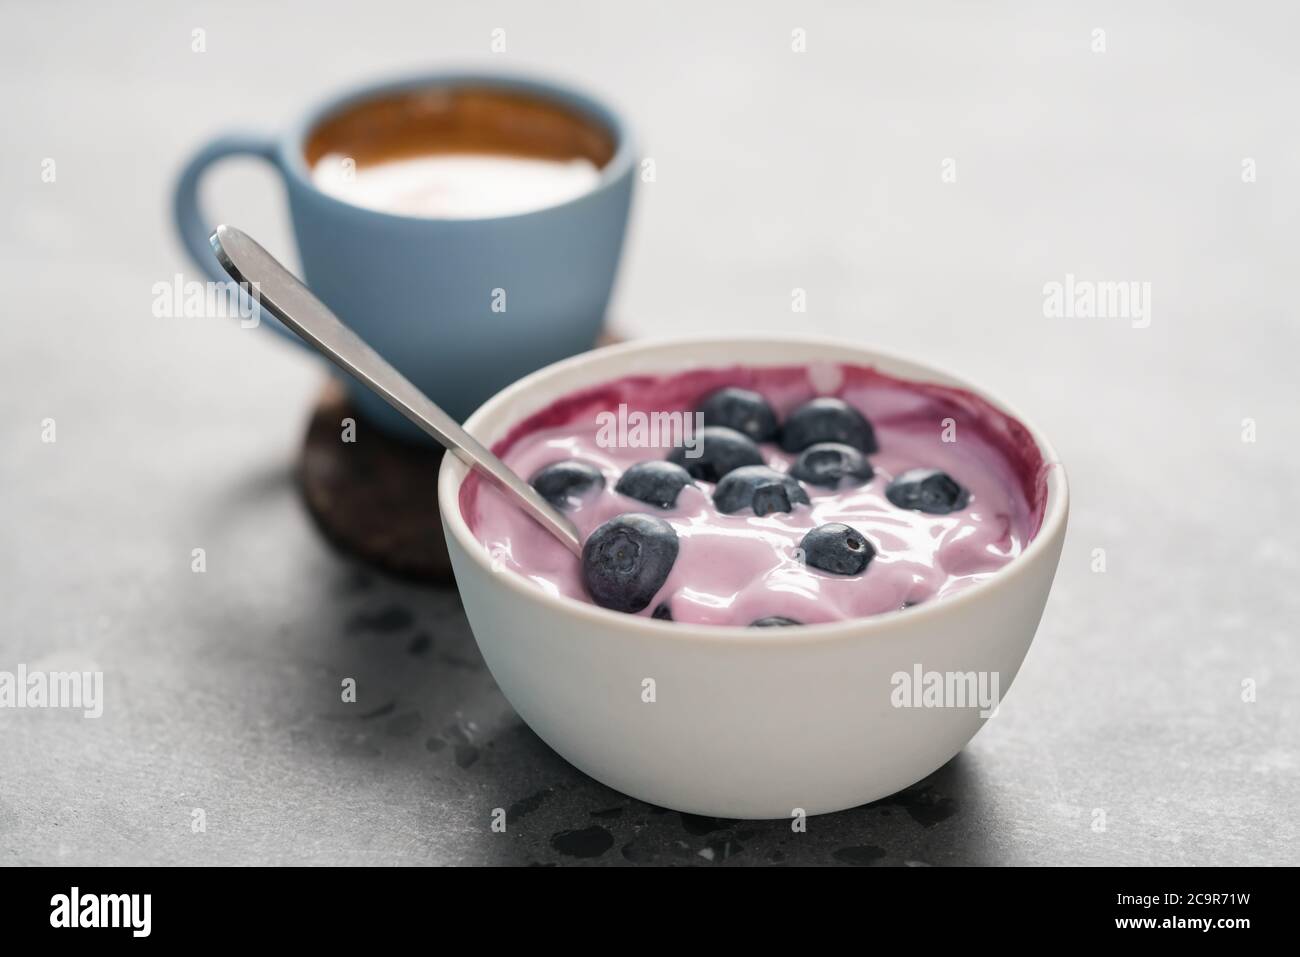 Heidelbeerjoghurt mit ganzen Beeren und einer Tasse frischen Espresso Auf konkretem Hintergrund Stockfoto